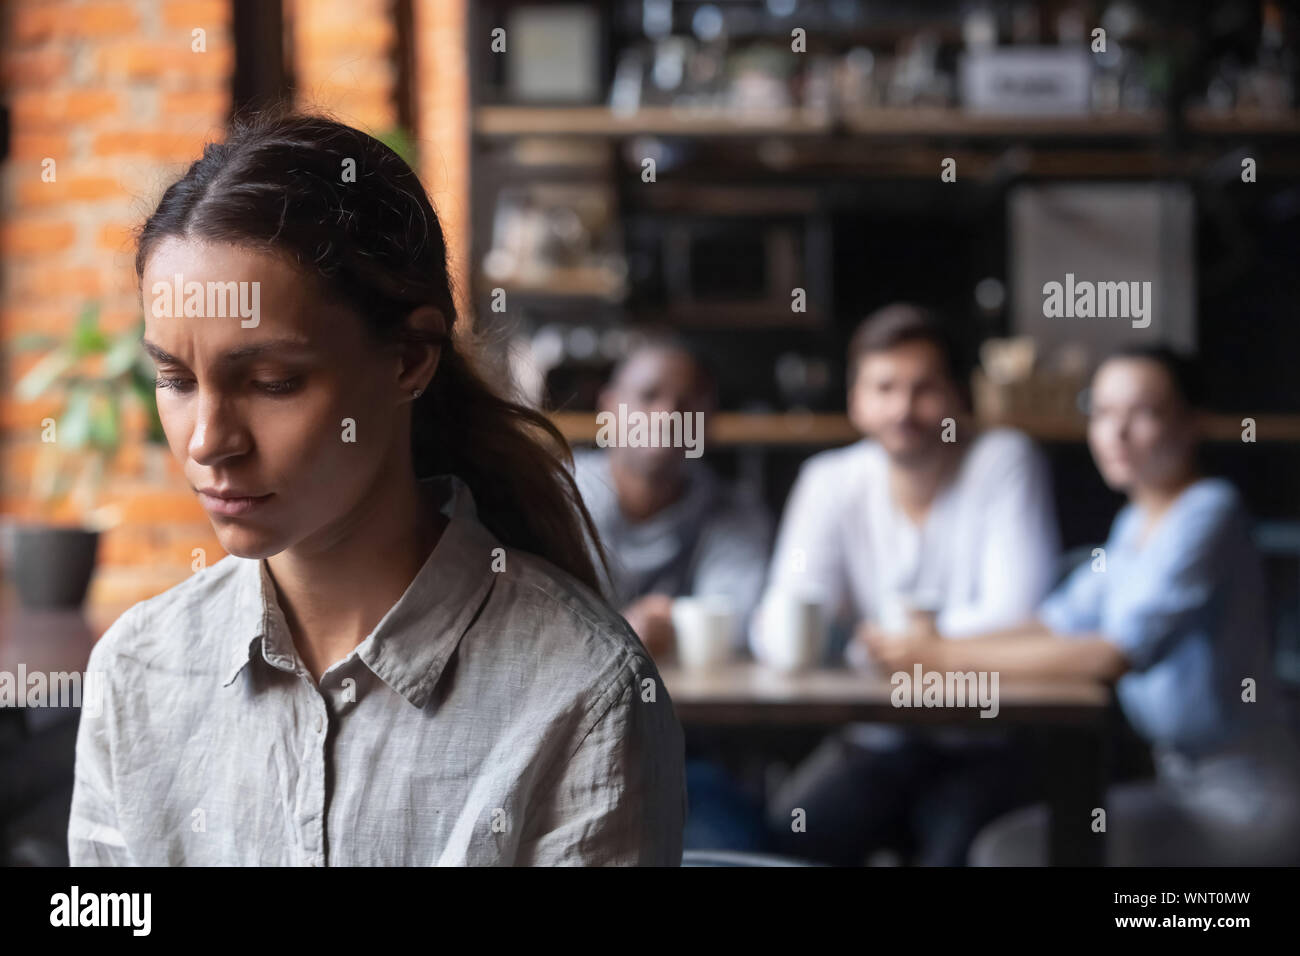 Malestar mestizos mujer sufre de acoso, sentado solo en cafe Foto de stock